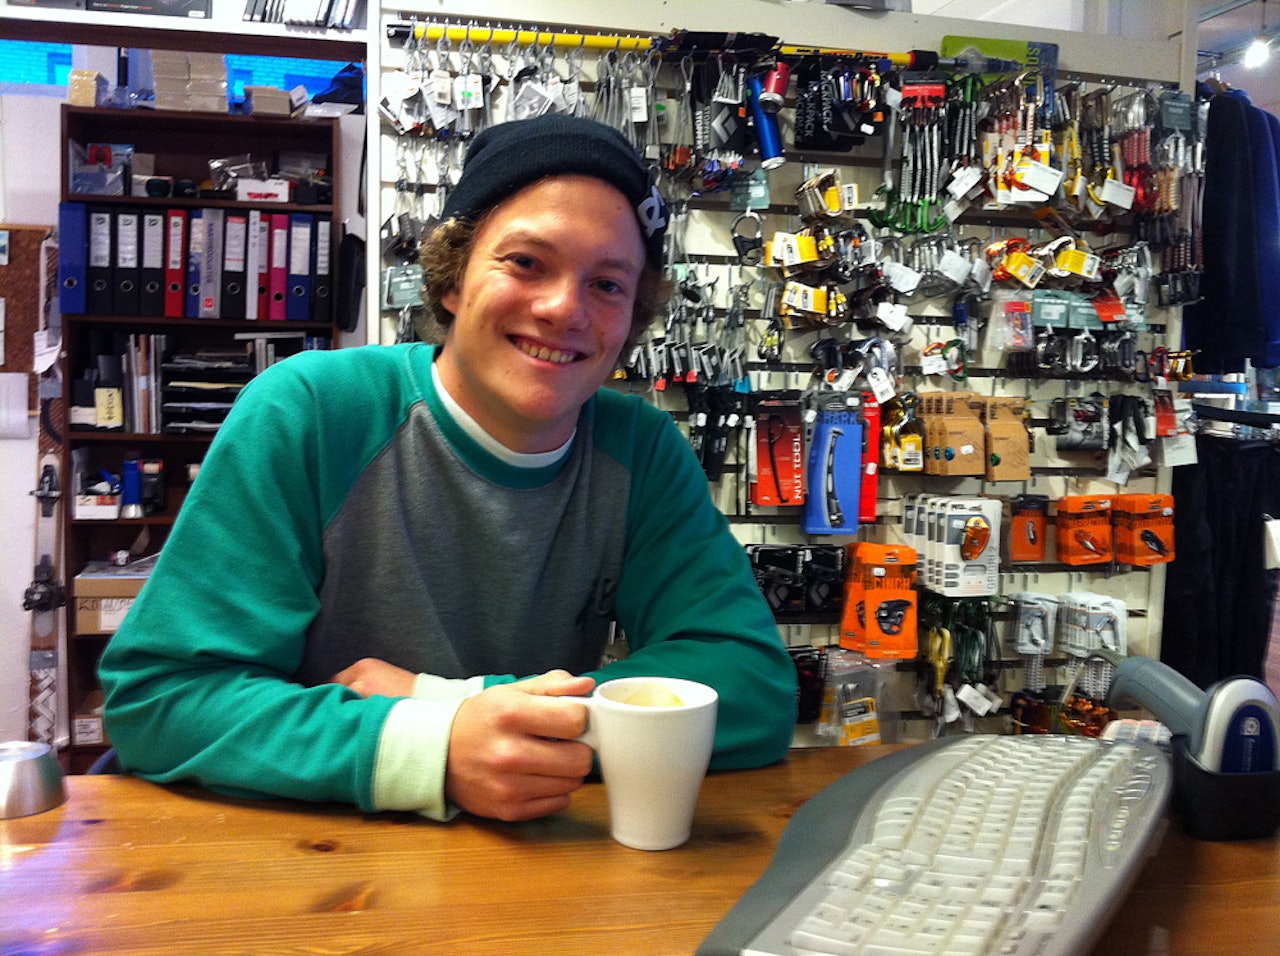 PÅ JOBB: Espen Bergh jobber i sportsbutikk i sommer. Foto: Tore Meirik